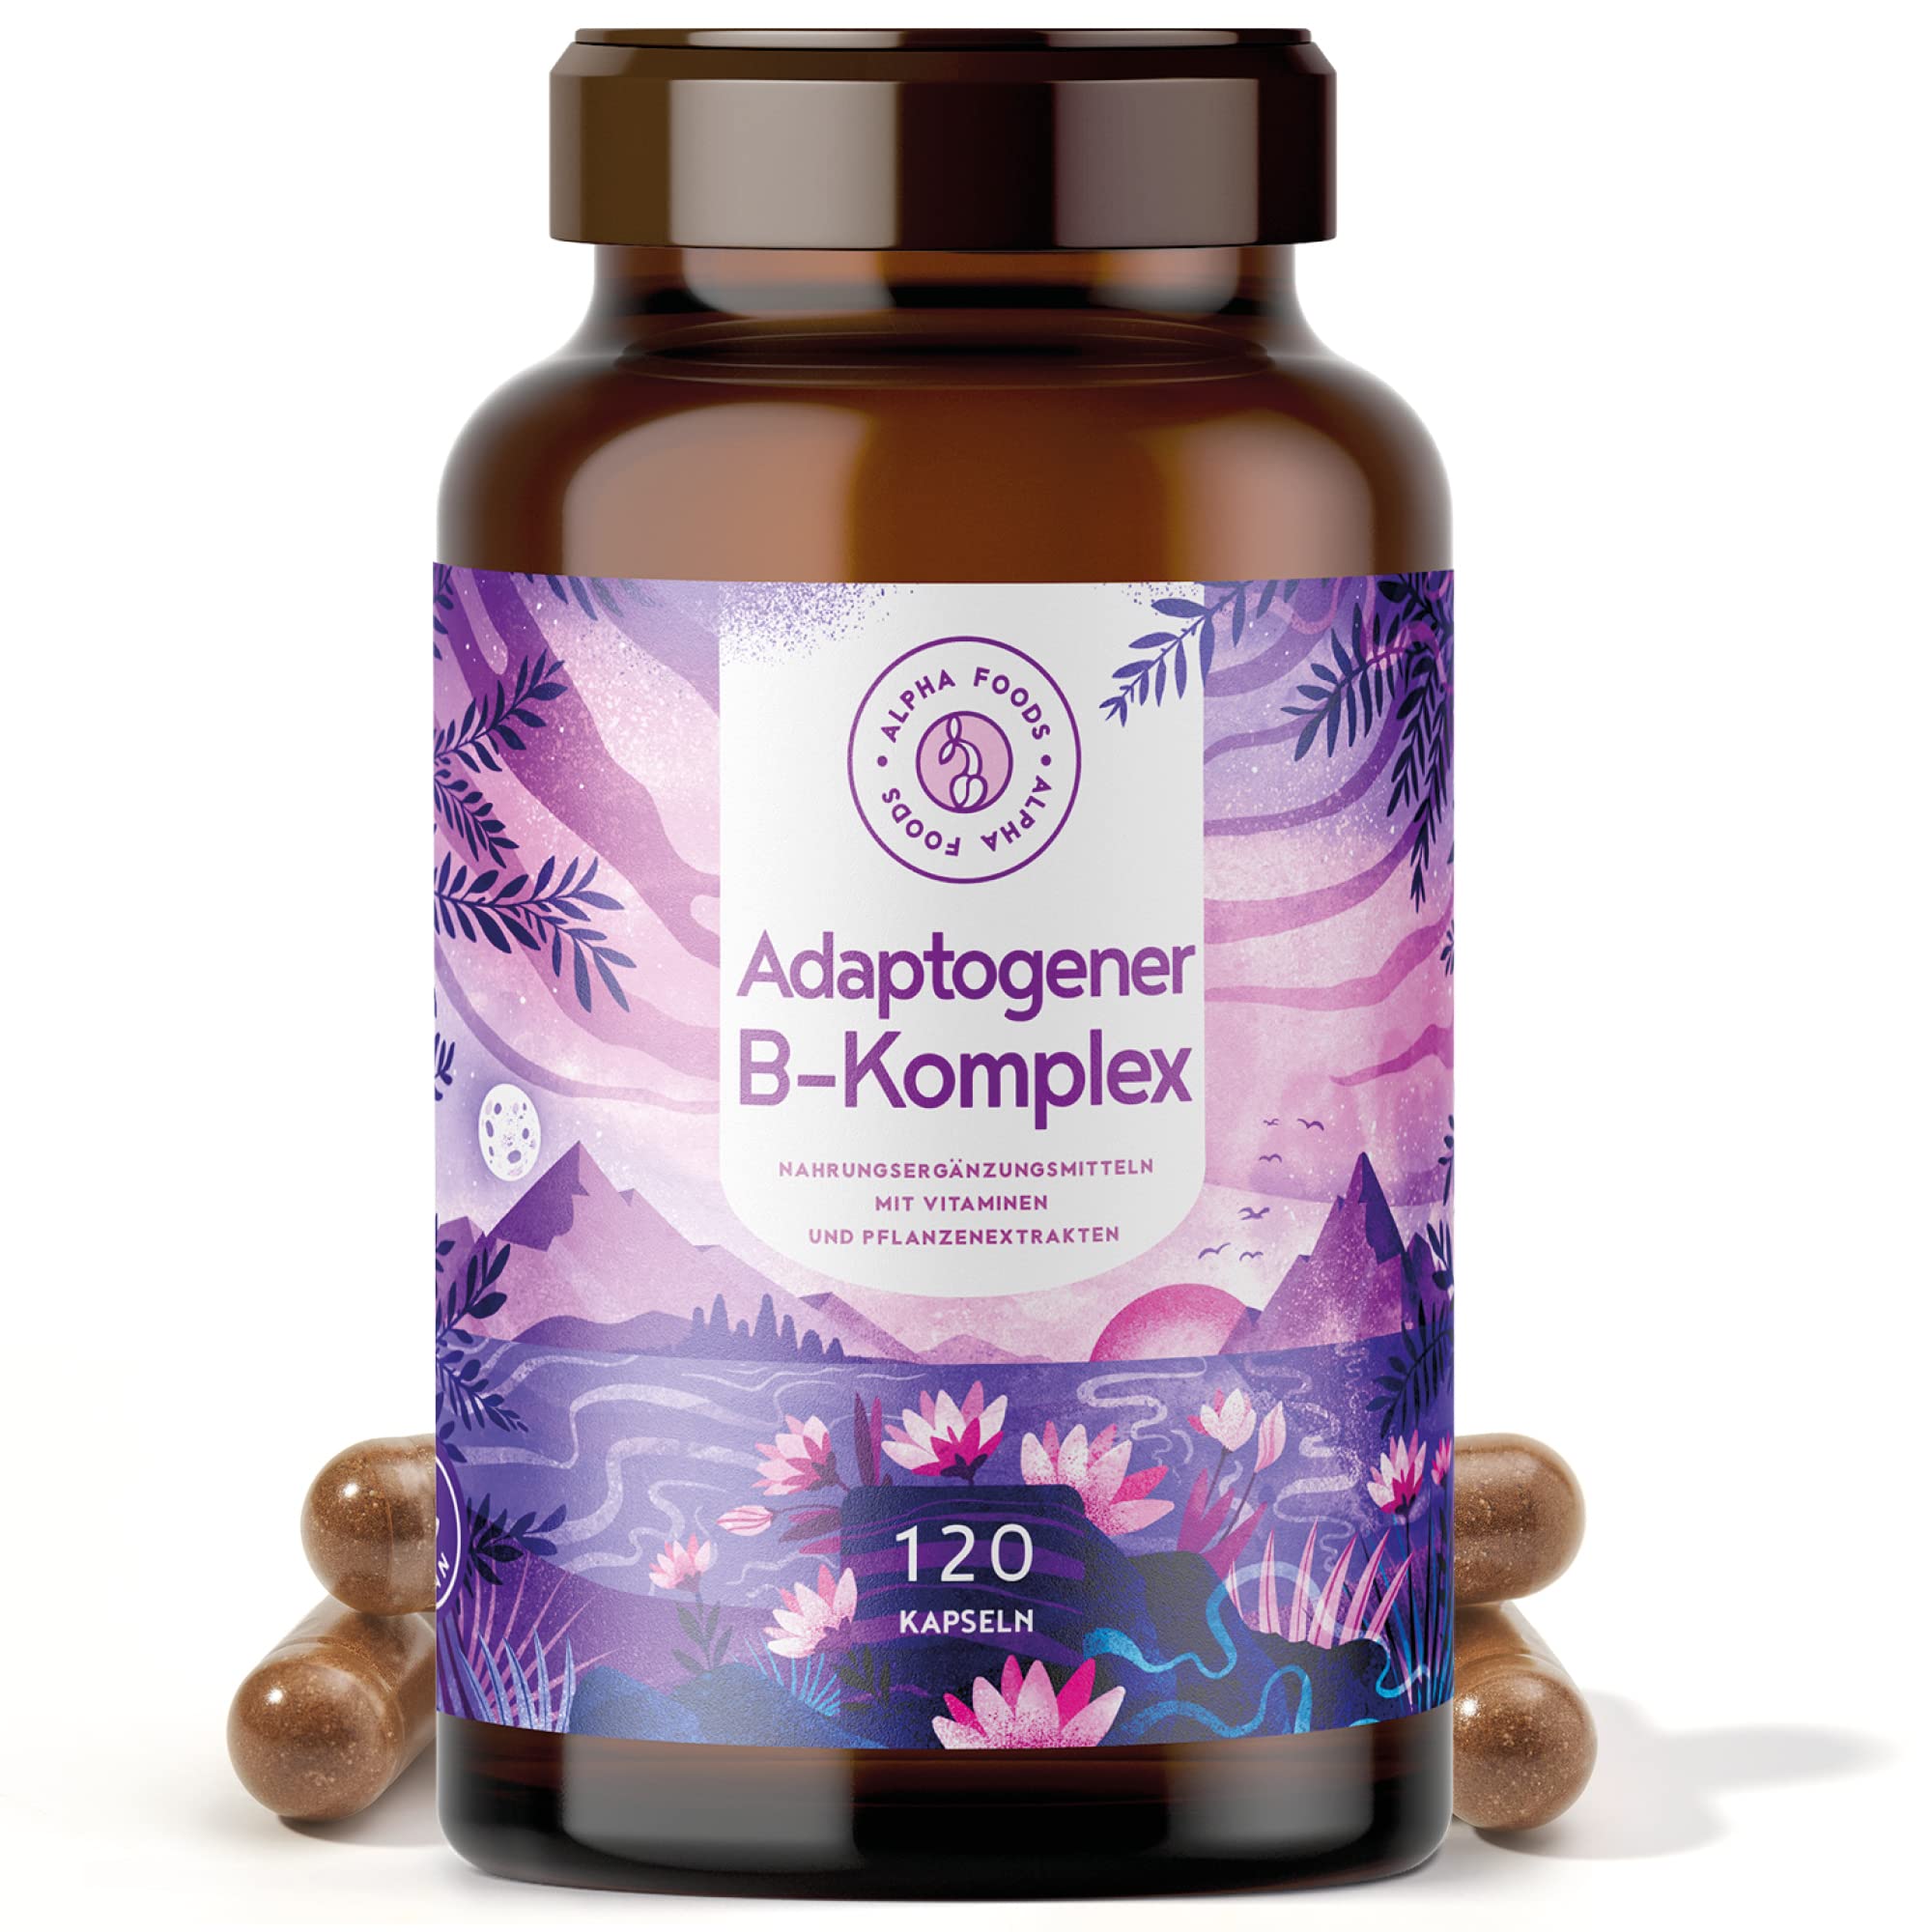 Adaptogener Vitamin B Komplex, mit Extrafolate-S® - natürliches Stress-Management mit 5 ayurvedischen Adaptogenen u.a. Ashwagandha, Astragalus, Aronia und Rosenwurz - 120 Kapseln